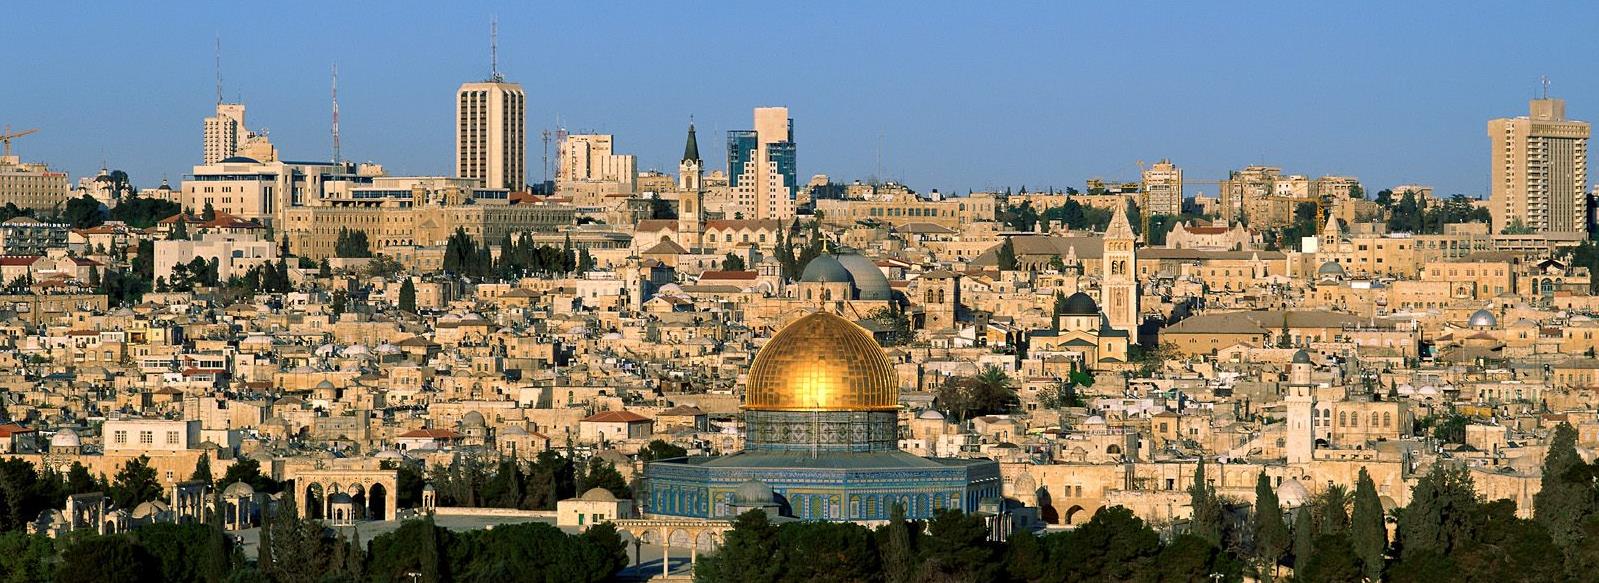 Localização geográfica de Jerusalém e a